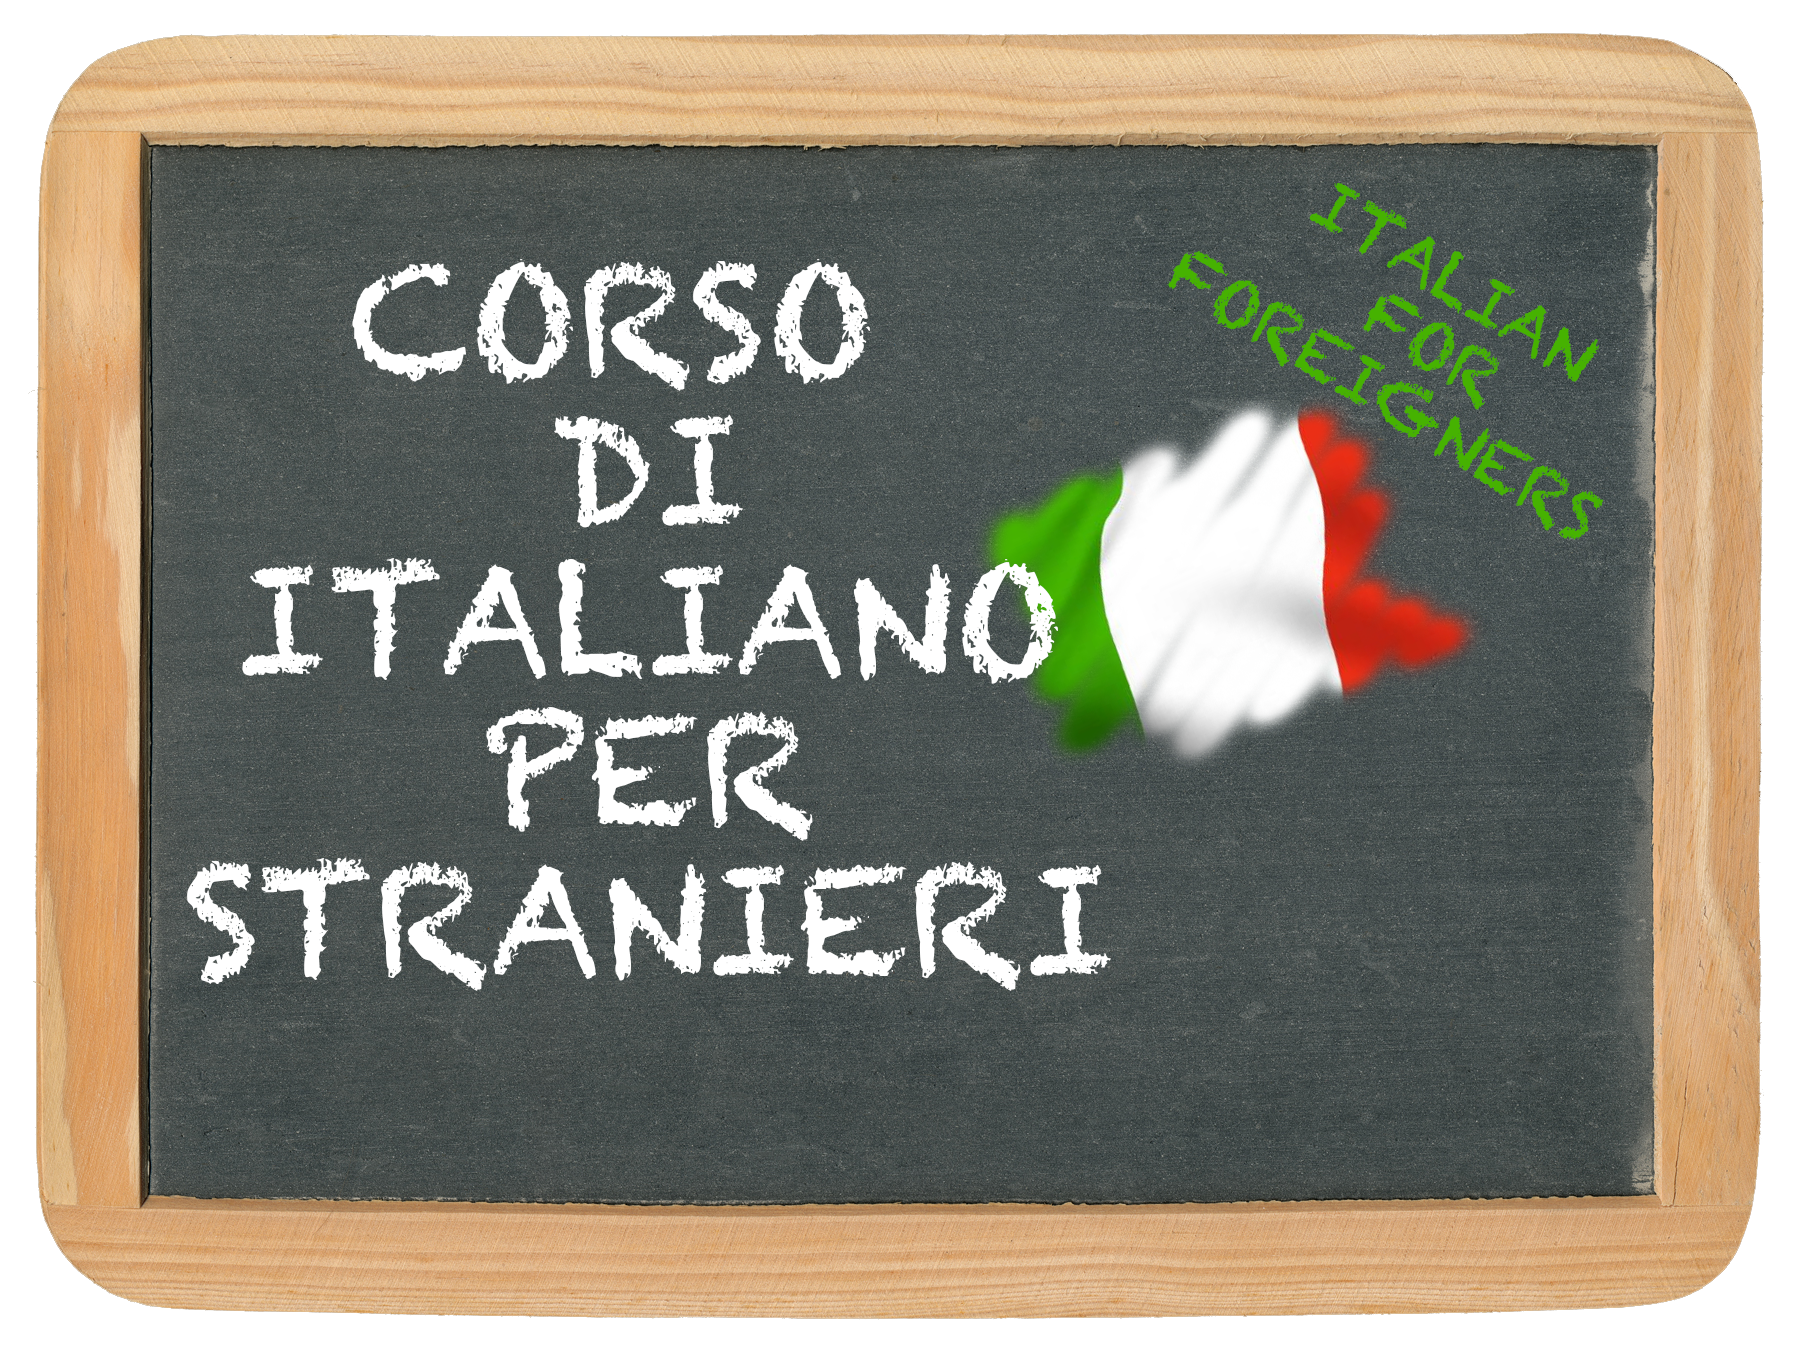 Corso di Italiano per stranieri – Italian language course for foreigners